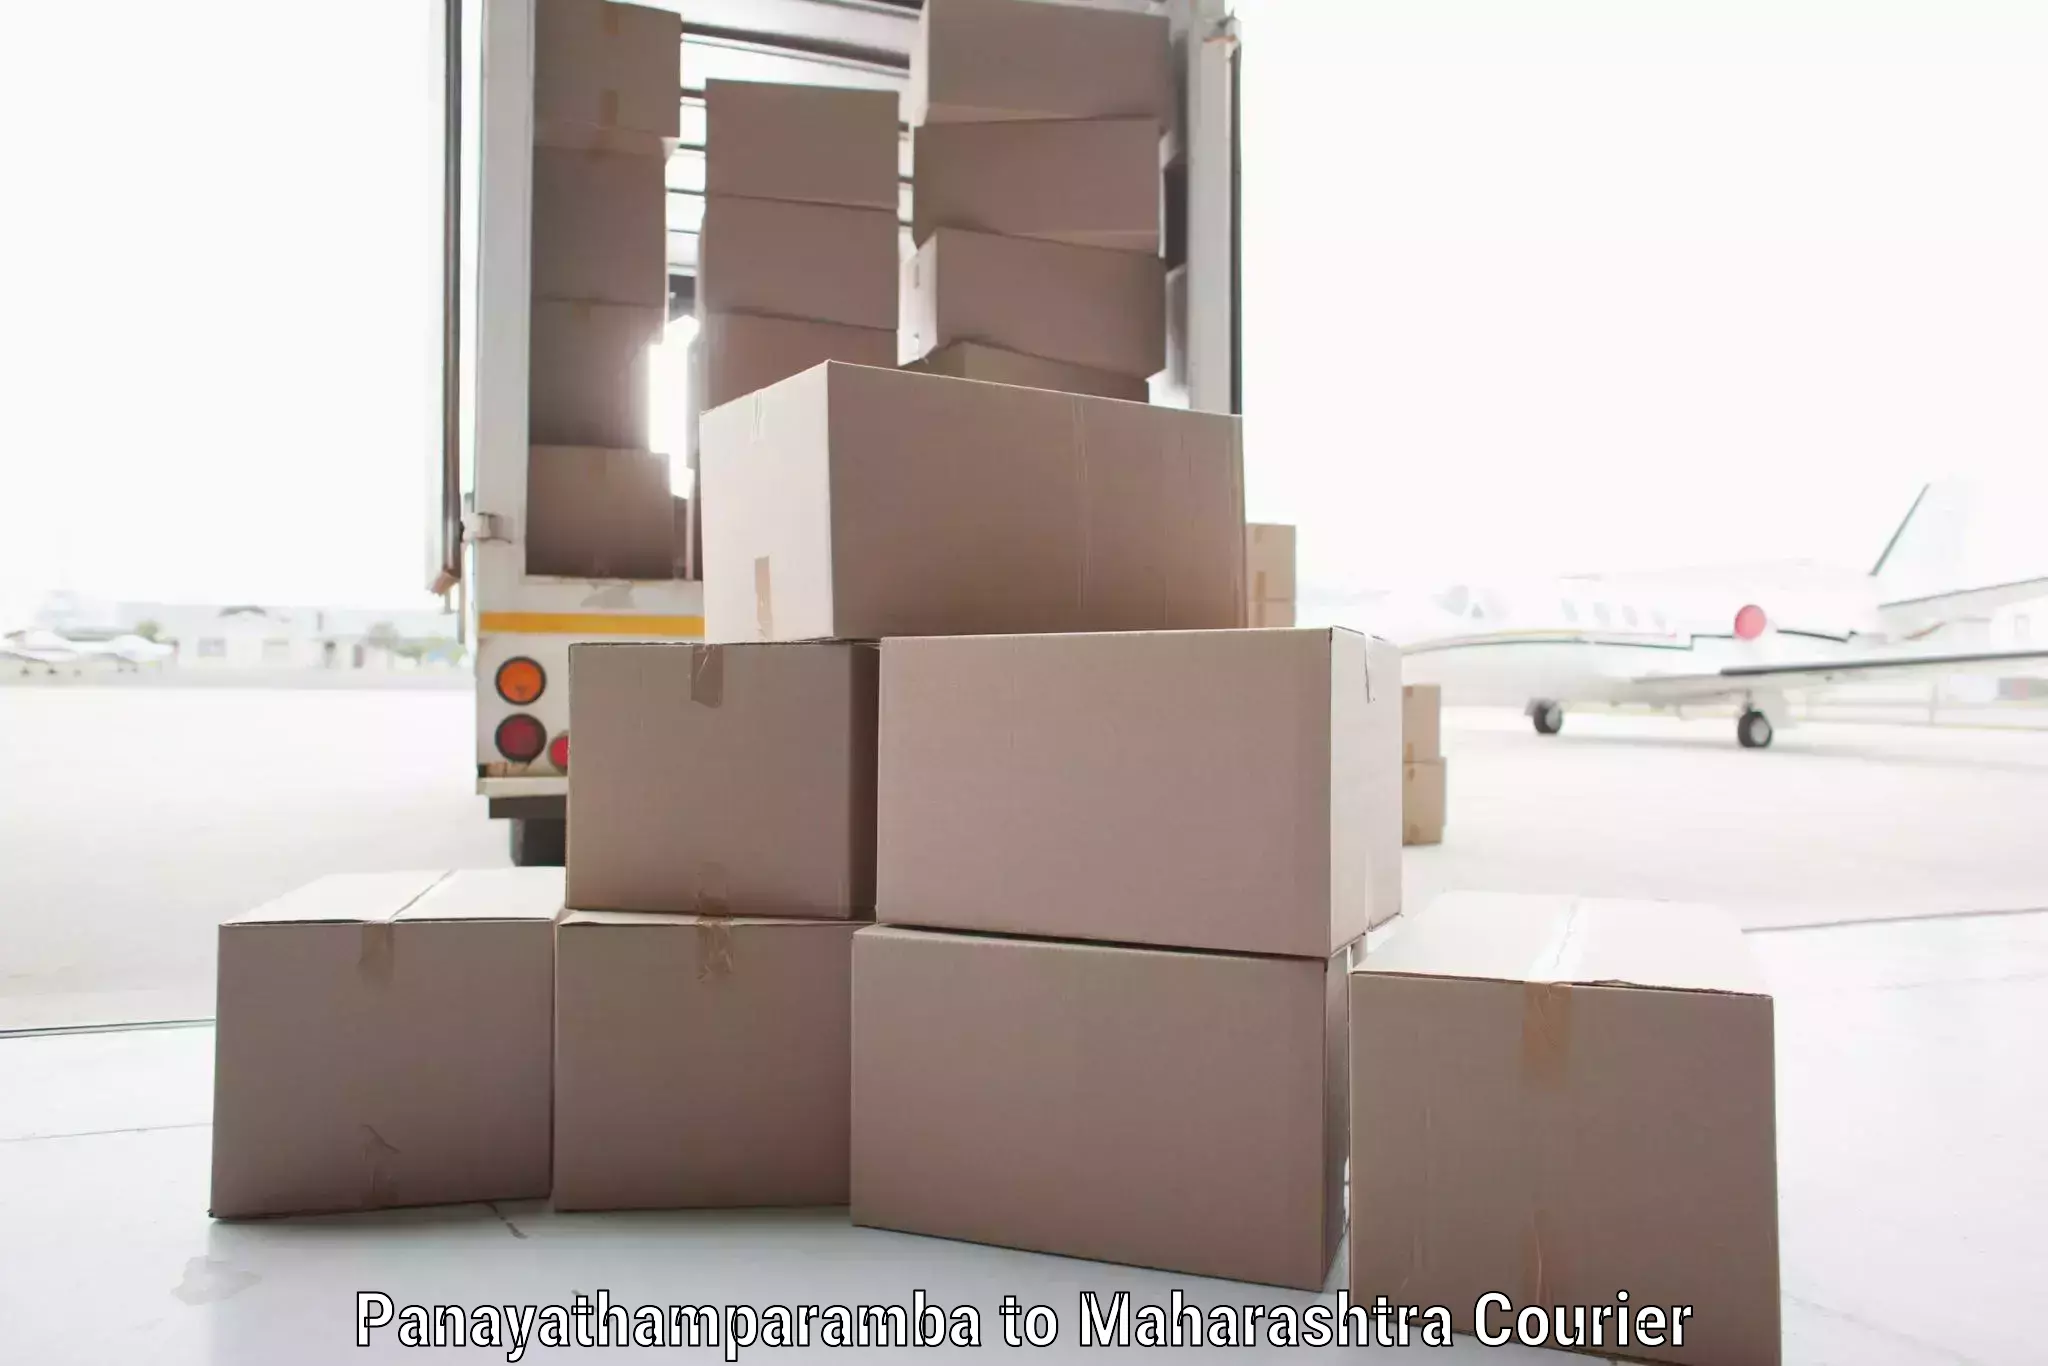 High-capacity shipping options Panayathamparamba to Ganpatipule